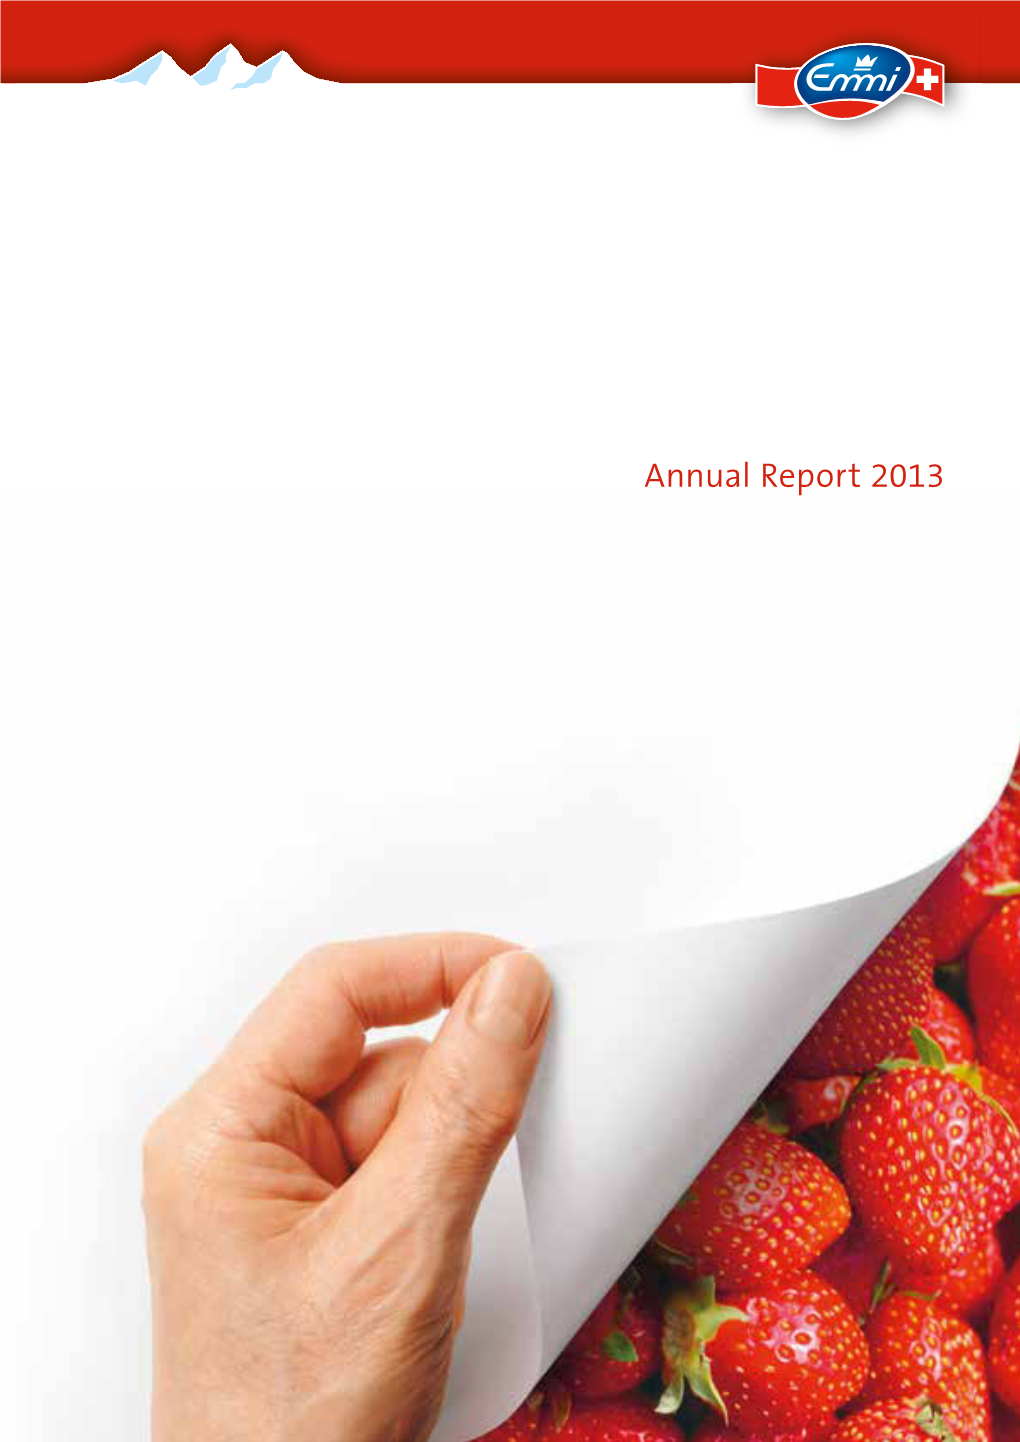 Annual Report 2013 Emmi in Brief